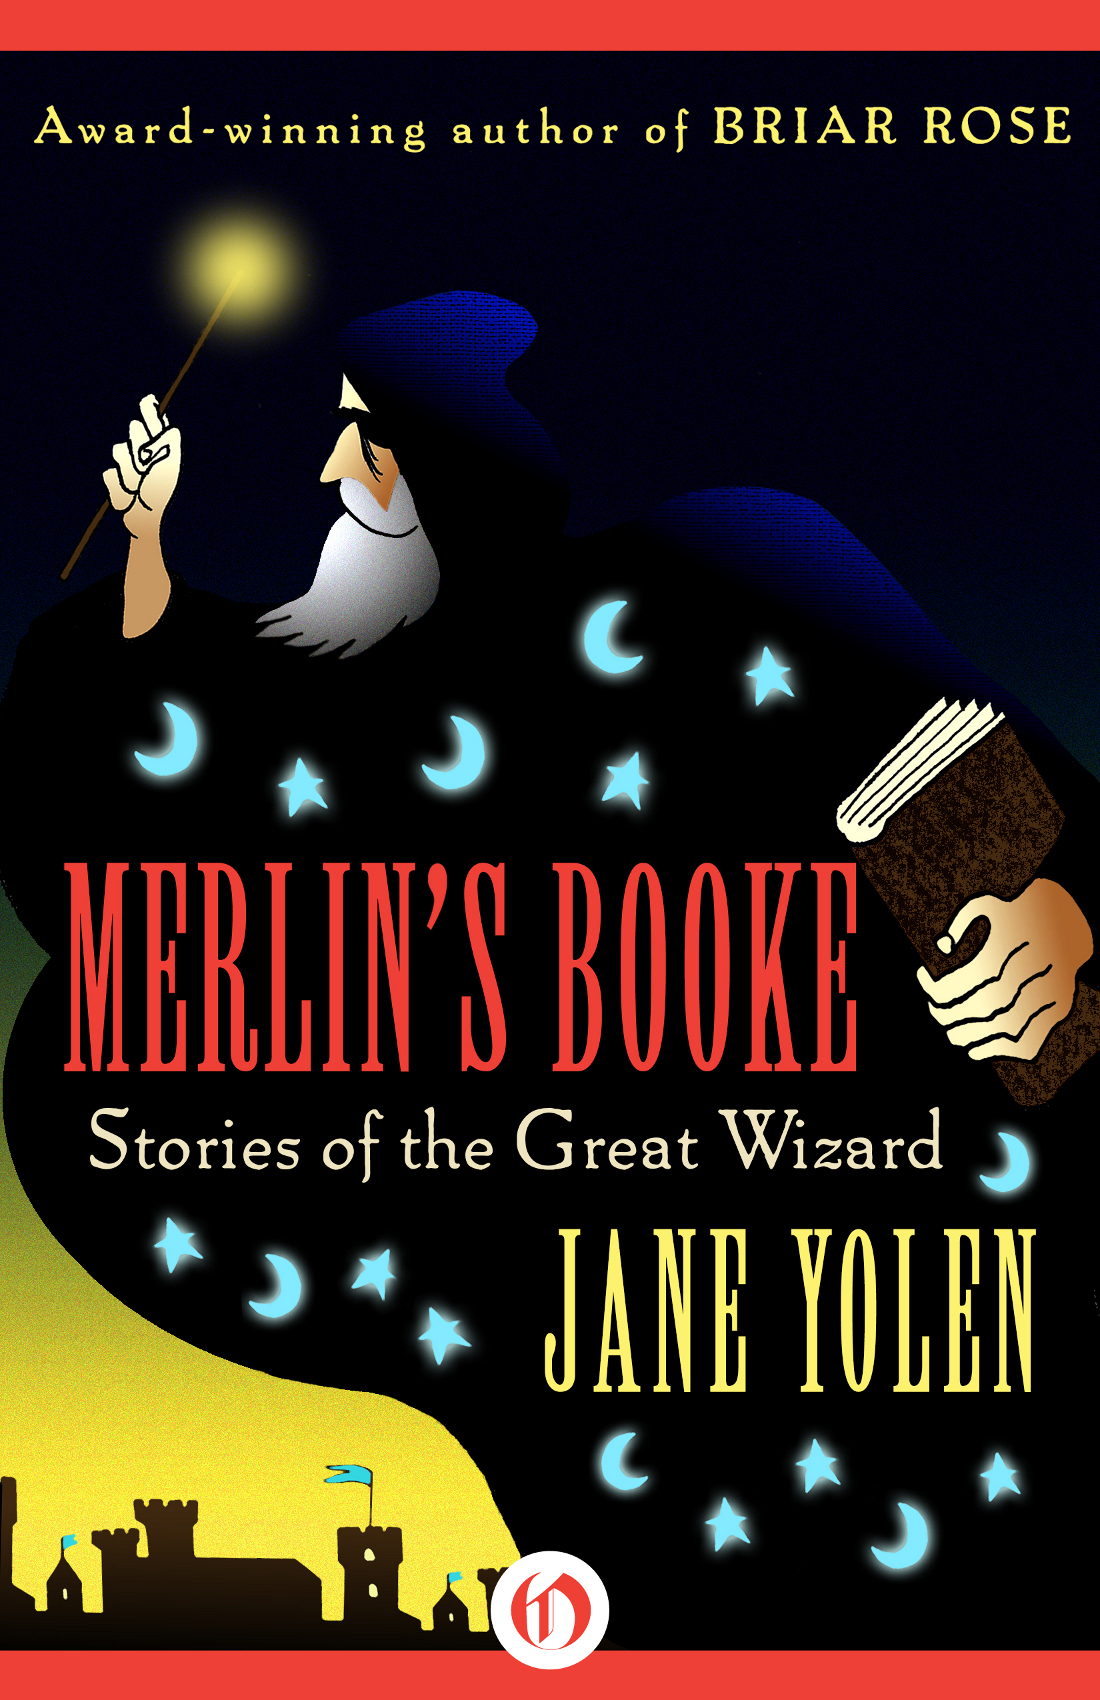 Merlin's Booke by Jane Yolen